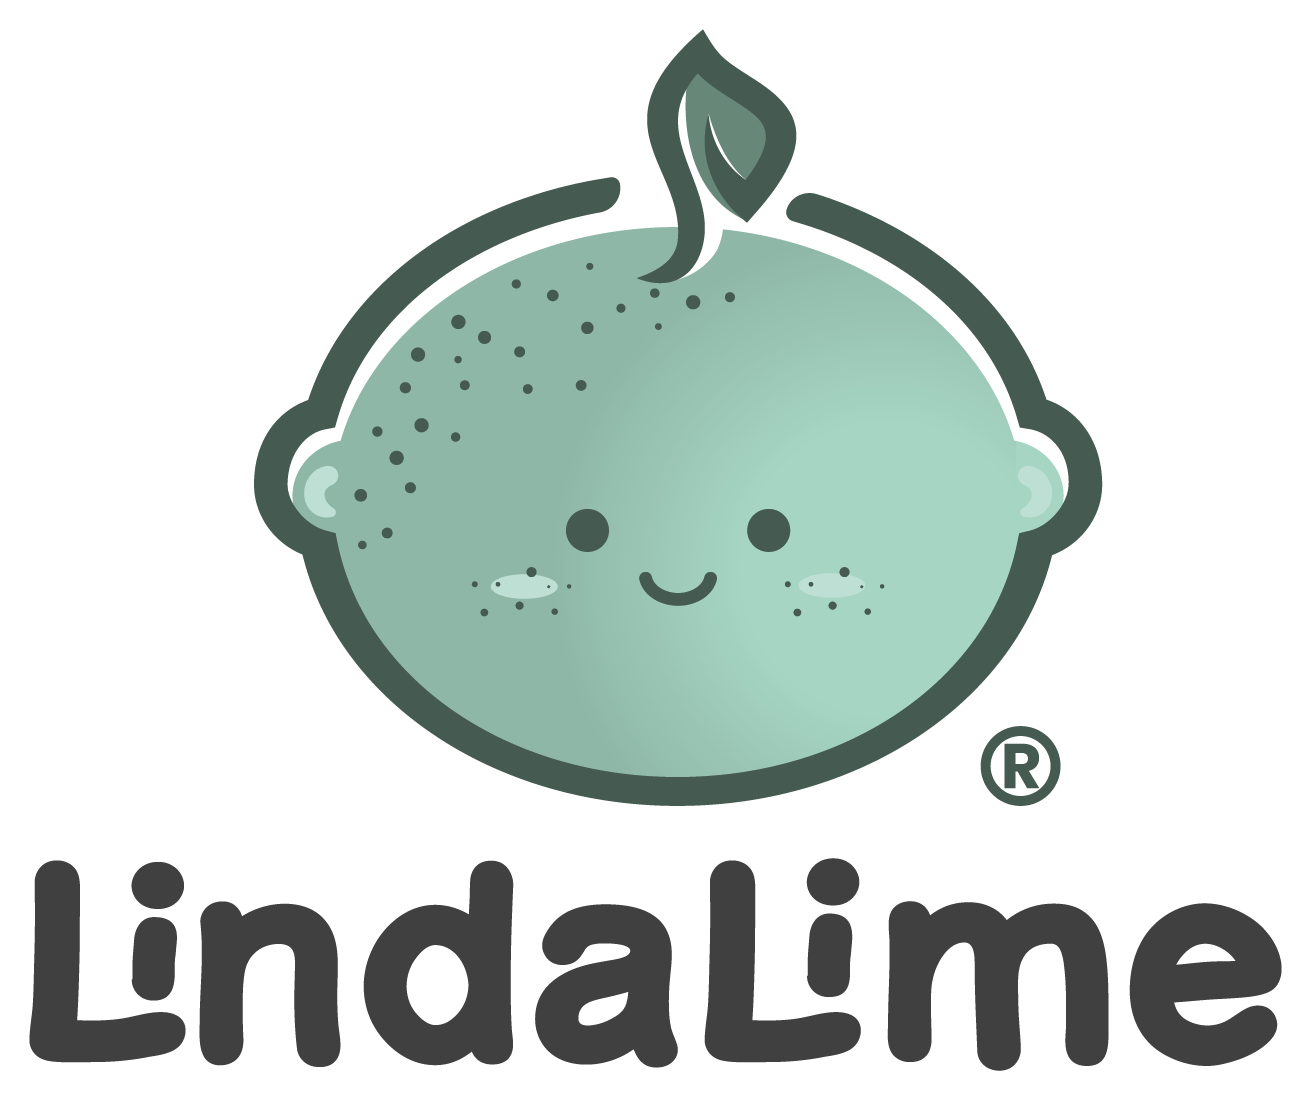 Lindalime logó